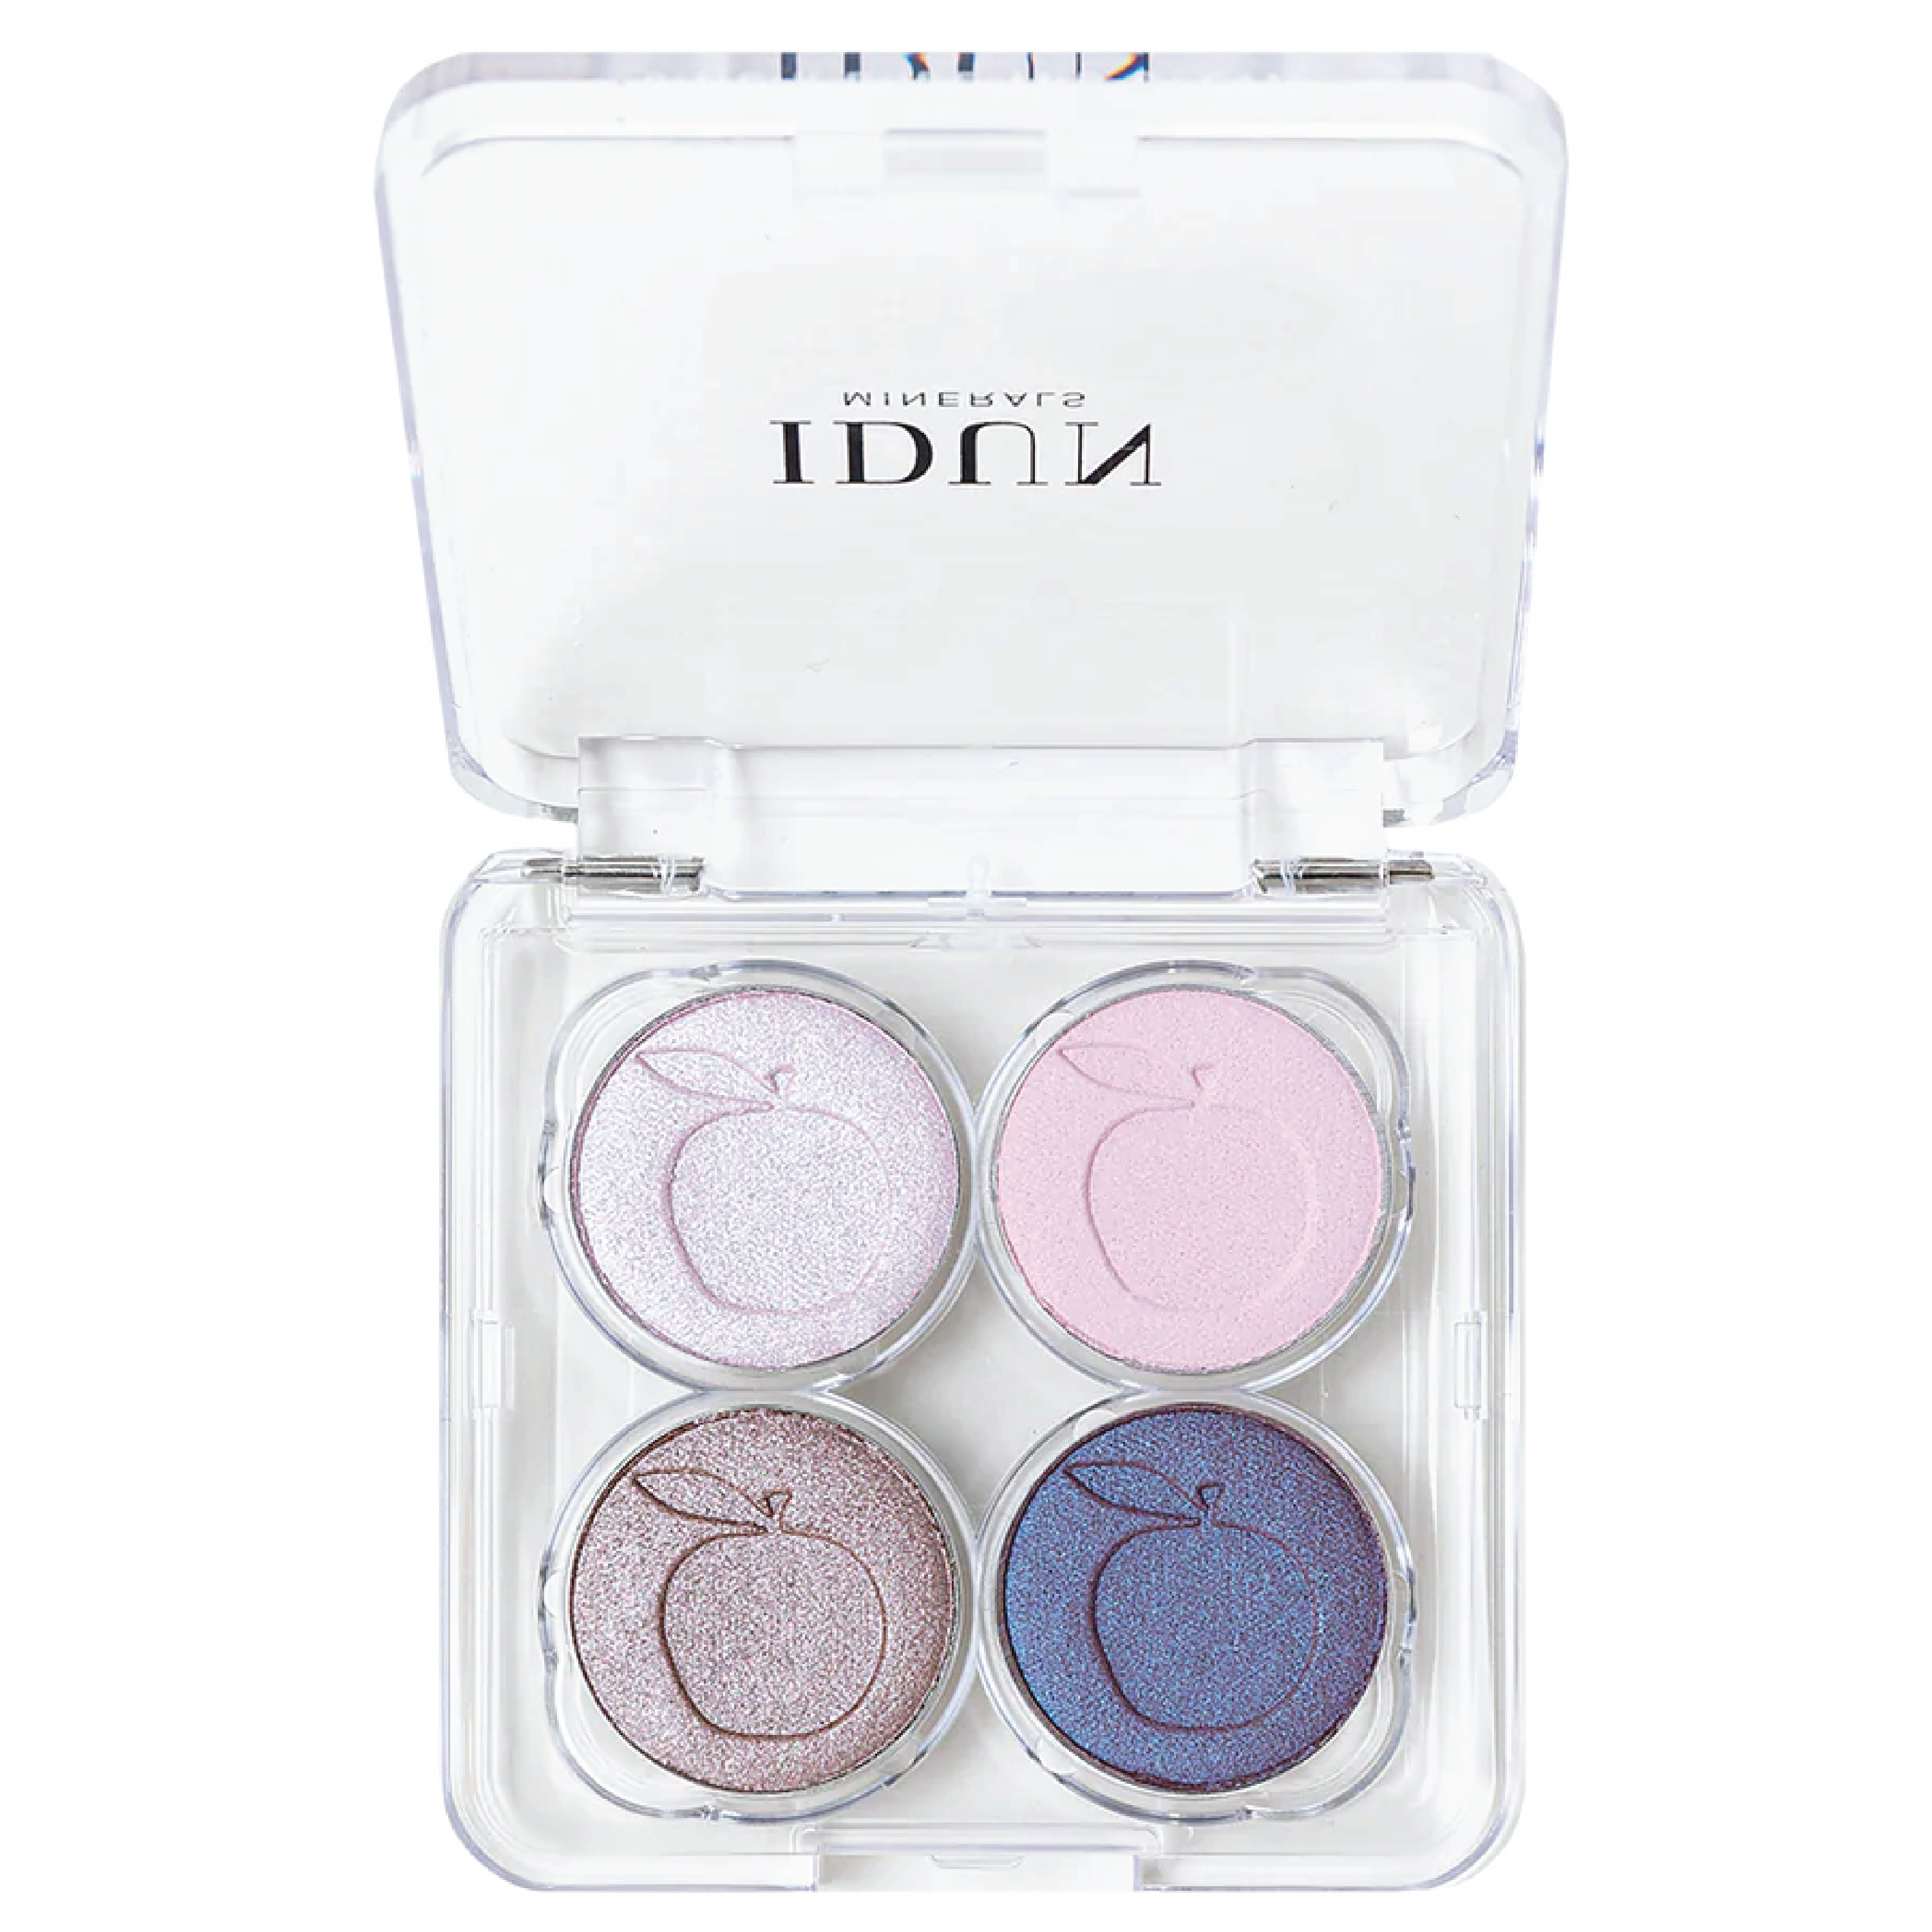 IDUN Minerals Eyeshadow Palette, Norrlandssyren, 4 g